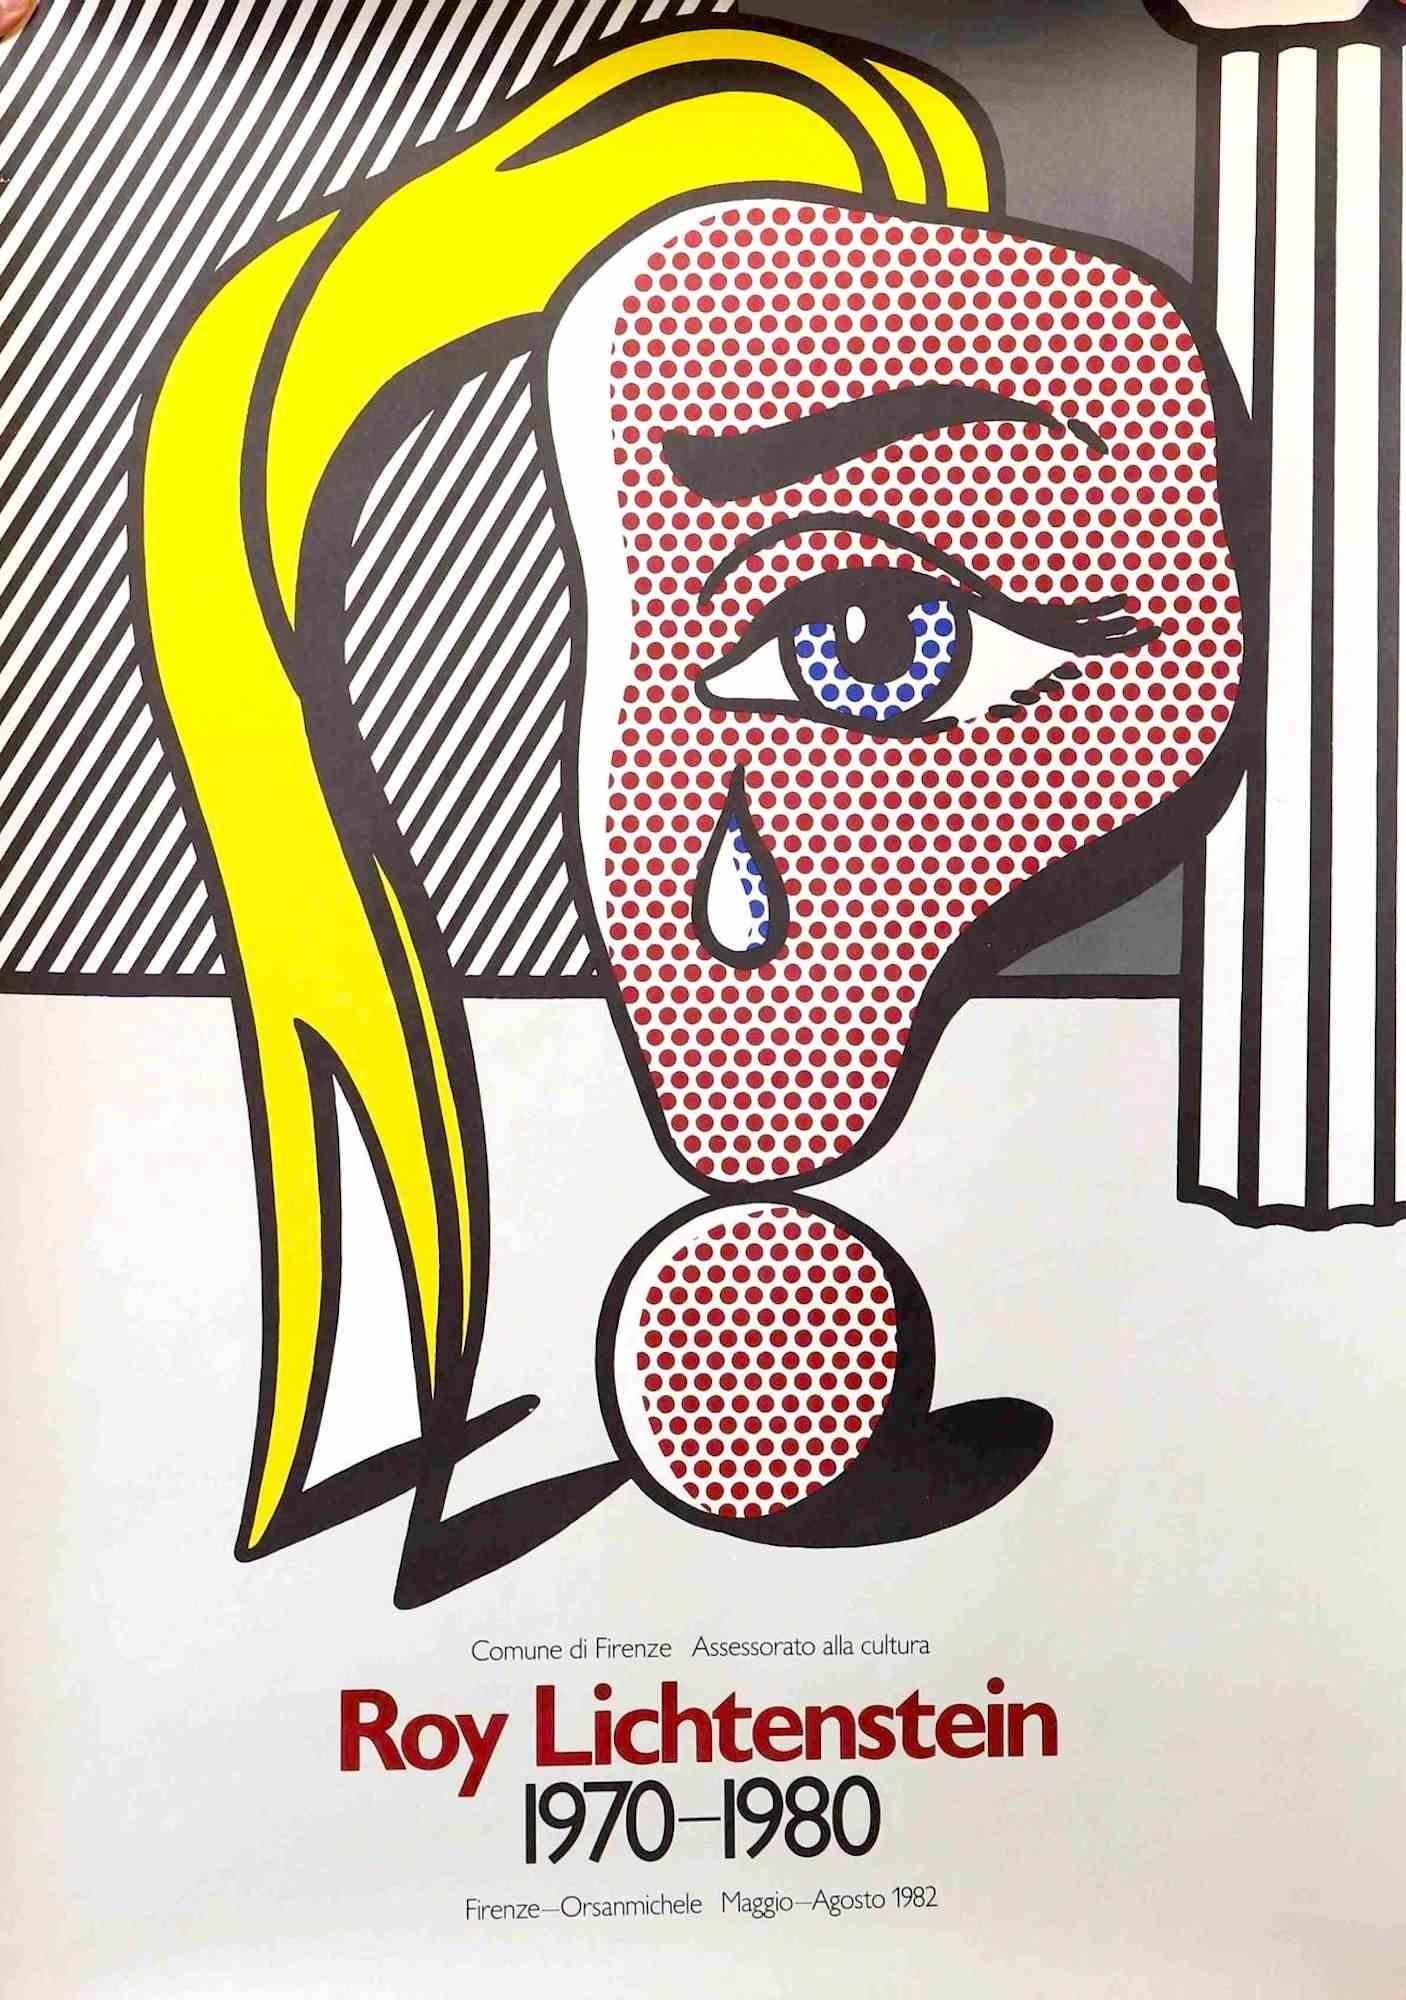 Vintage Poster Exhibition in Florenz ist ein sehr farbenfrohes Kunstwerk von Roy Lichtenstein aus dem Jahr 1982.

Gemischter Farboffset auf Papier.

Dieser schöne Druck wurde anlässlich der Ausstellung in Orsanmichele in Florenz 1982